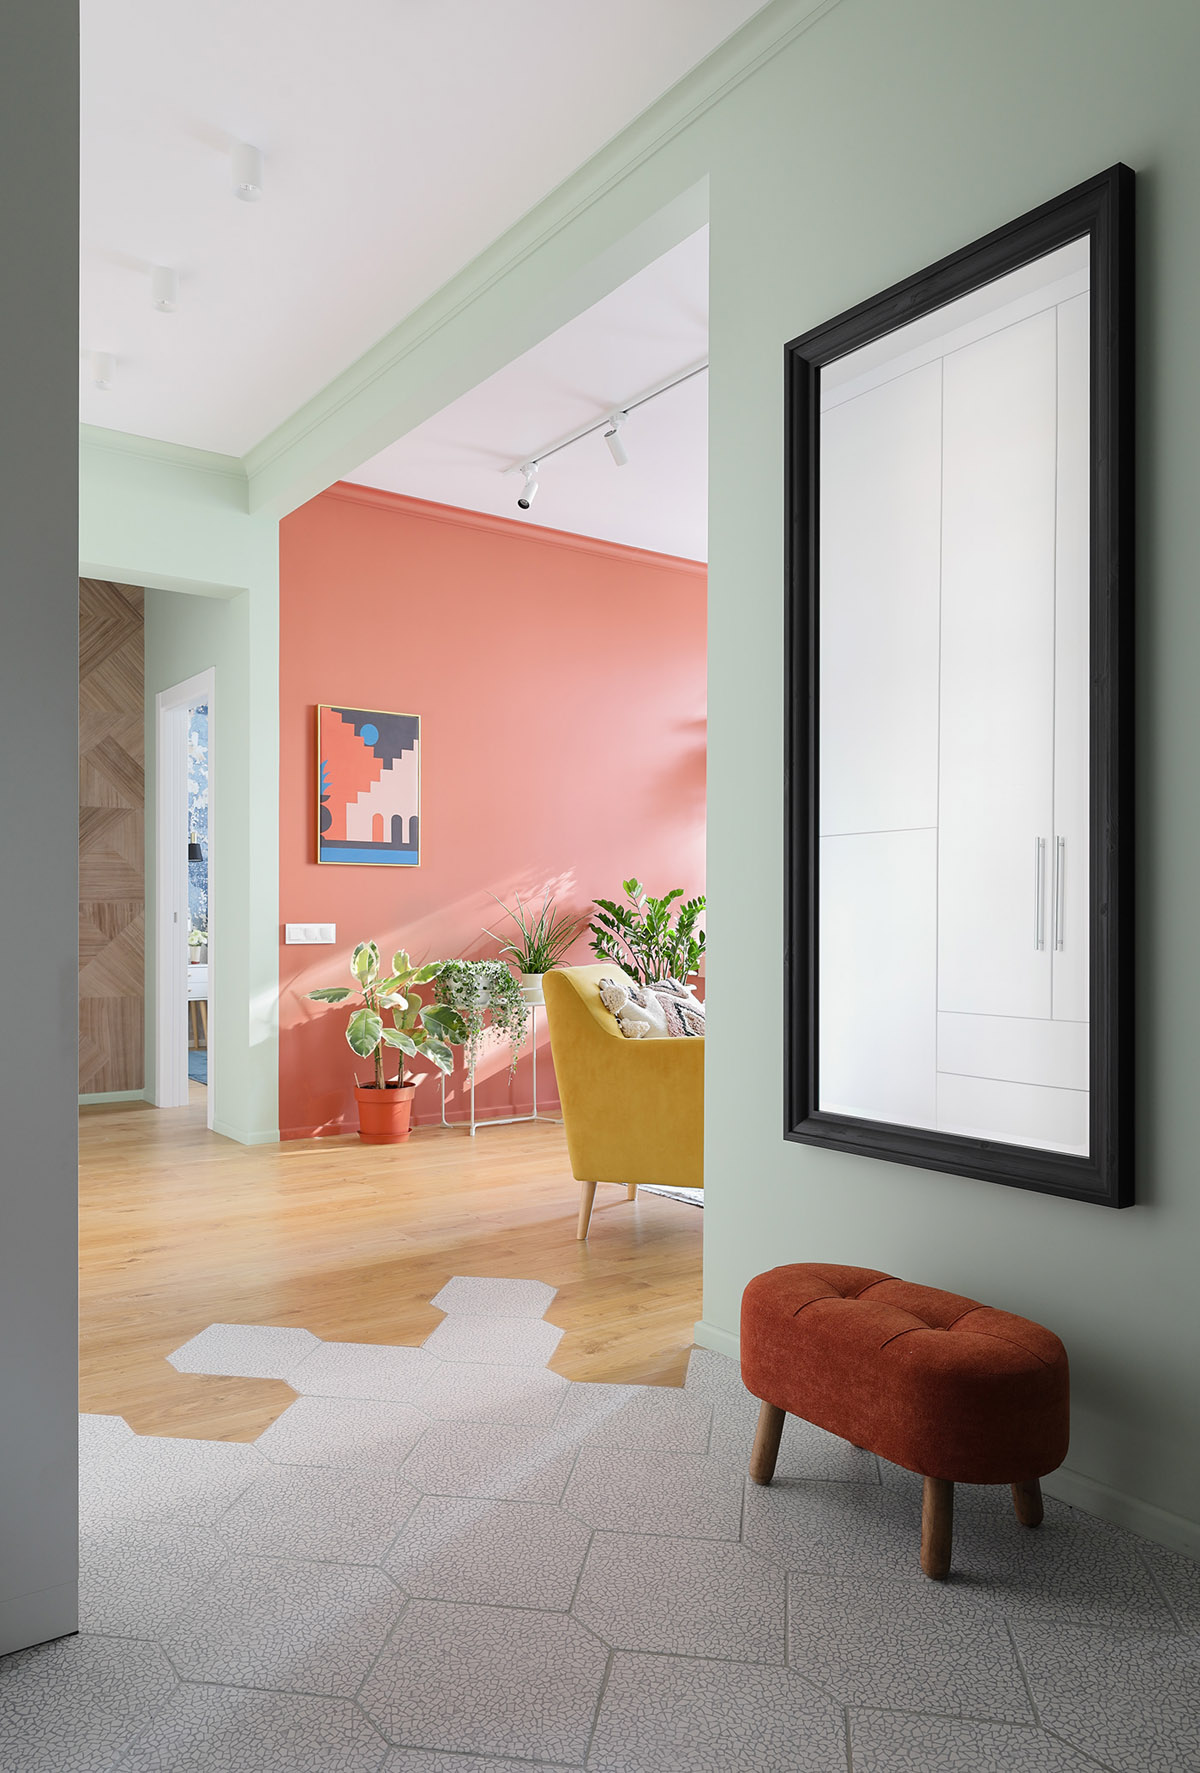 Bức tường điểm nhấn màu cam san hô làm nền cho sắc xanh thiên nhiên thêm phần nổi bật. Ở lối vào căn hộ, một băng ghế nhỏ lặp lại màu san hô tạo sự liền mạch.